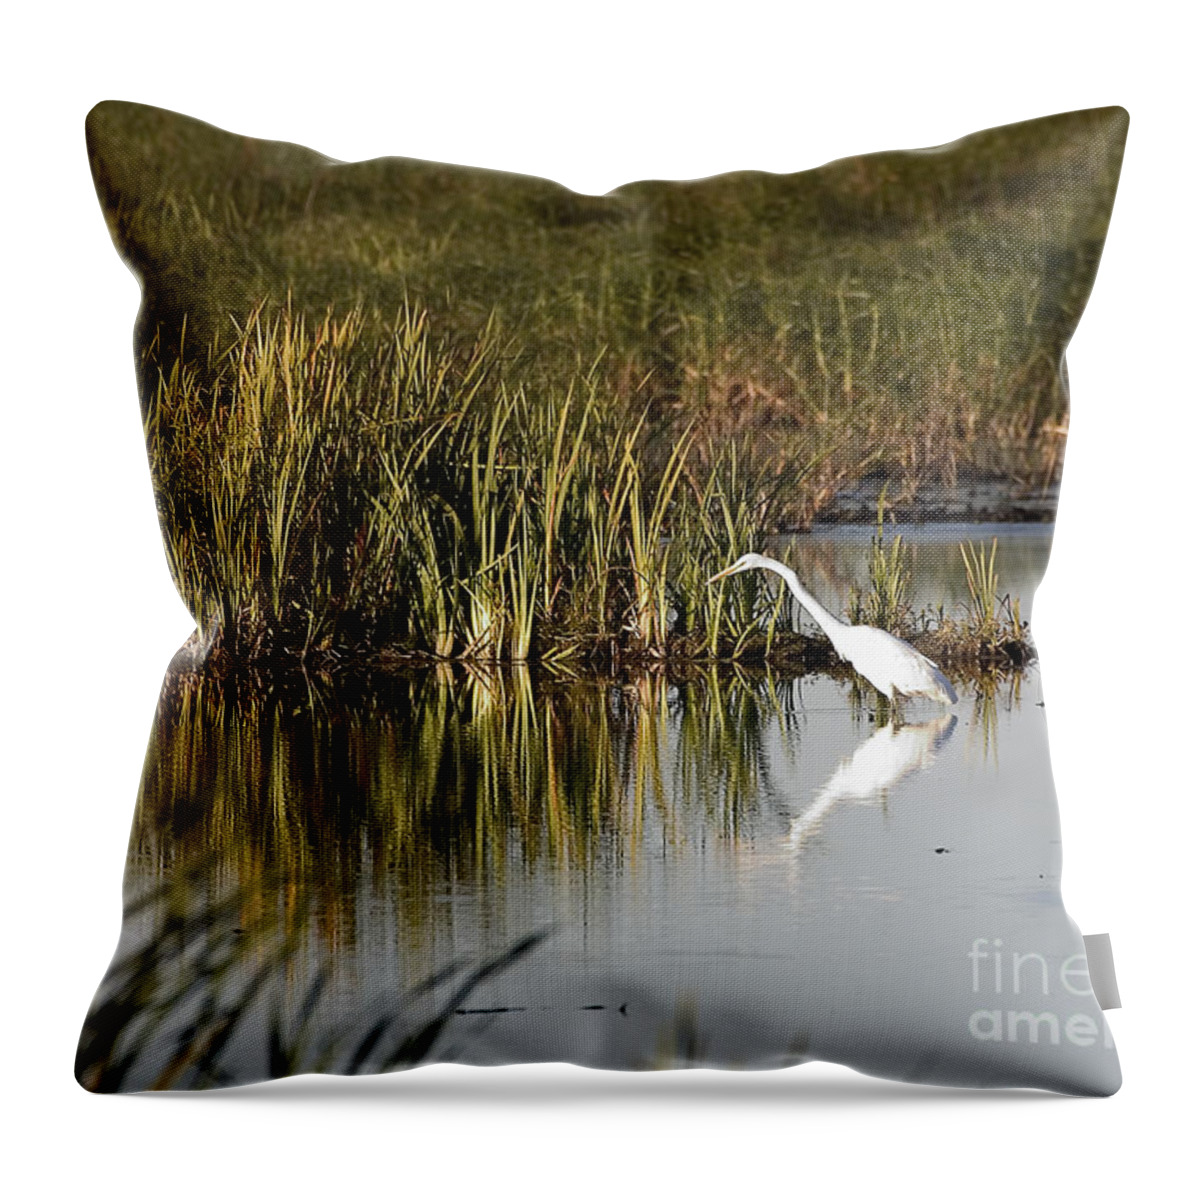 Birds Throw Pillow featuring the photograph Egret #2 by Steven Ralser